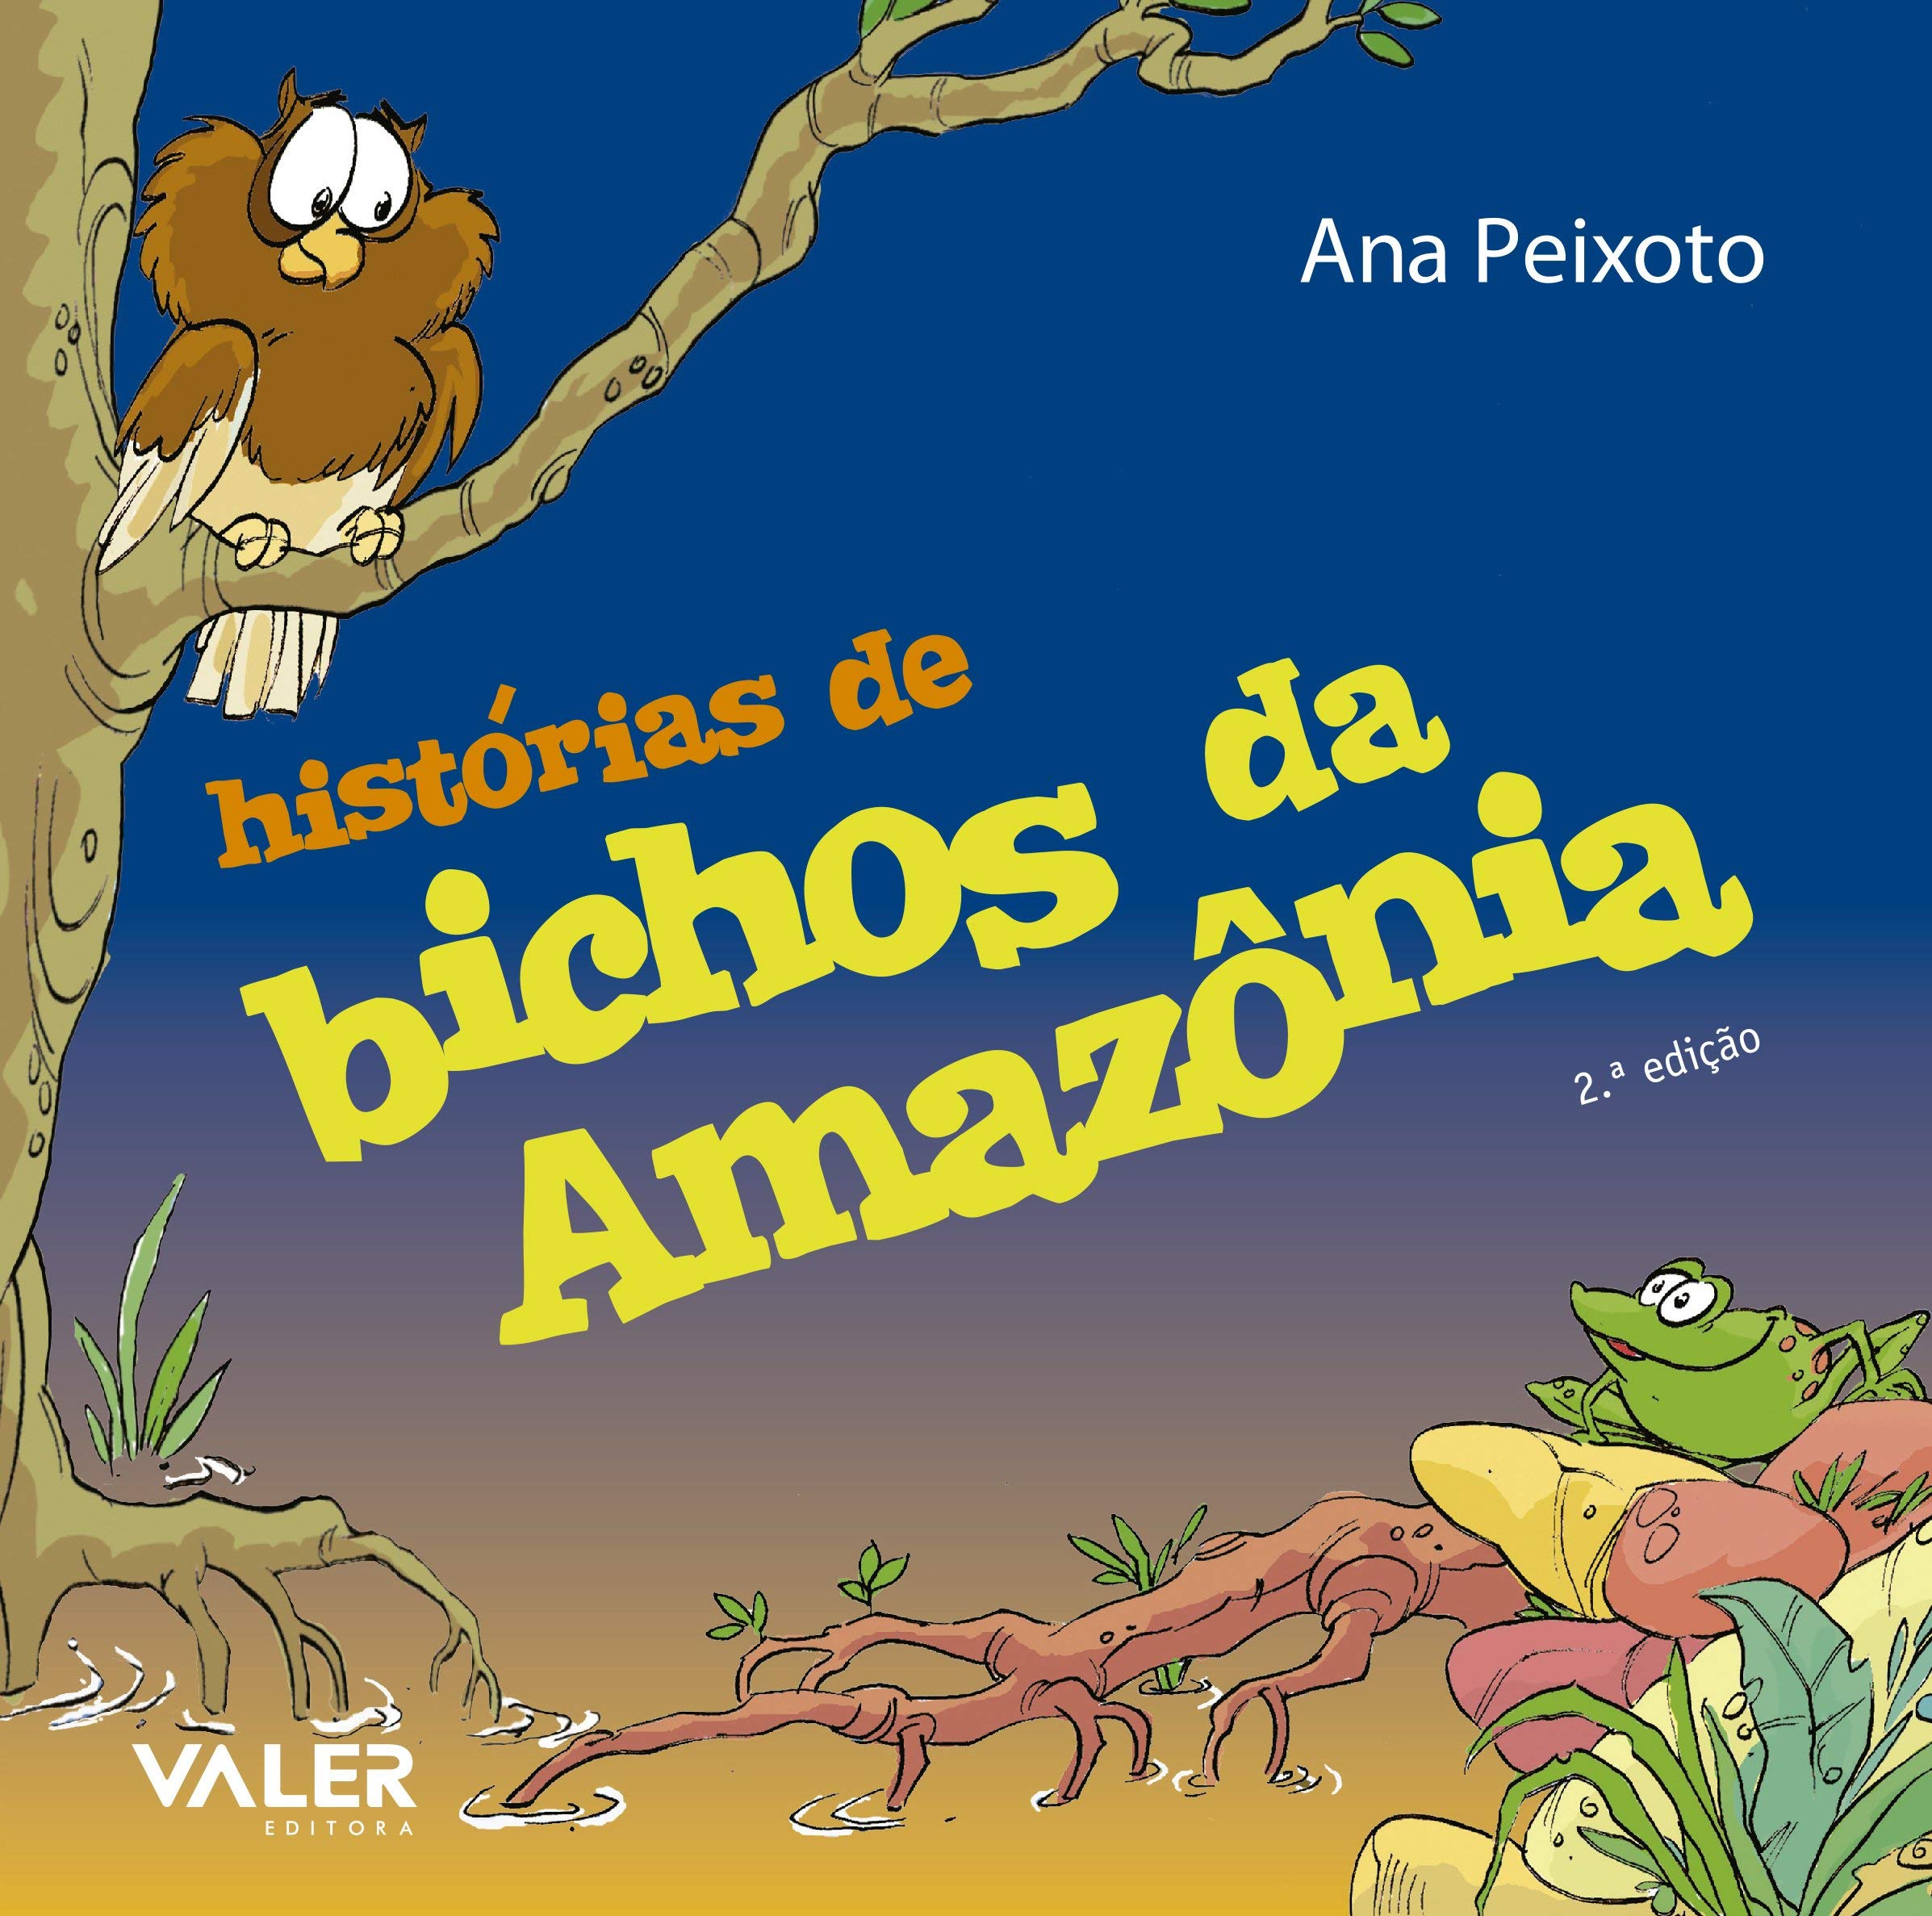 Dia Nacional do Livro Infantil: Amazonas1 traz sugestões de leitura para a criançada; confira!